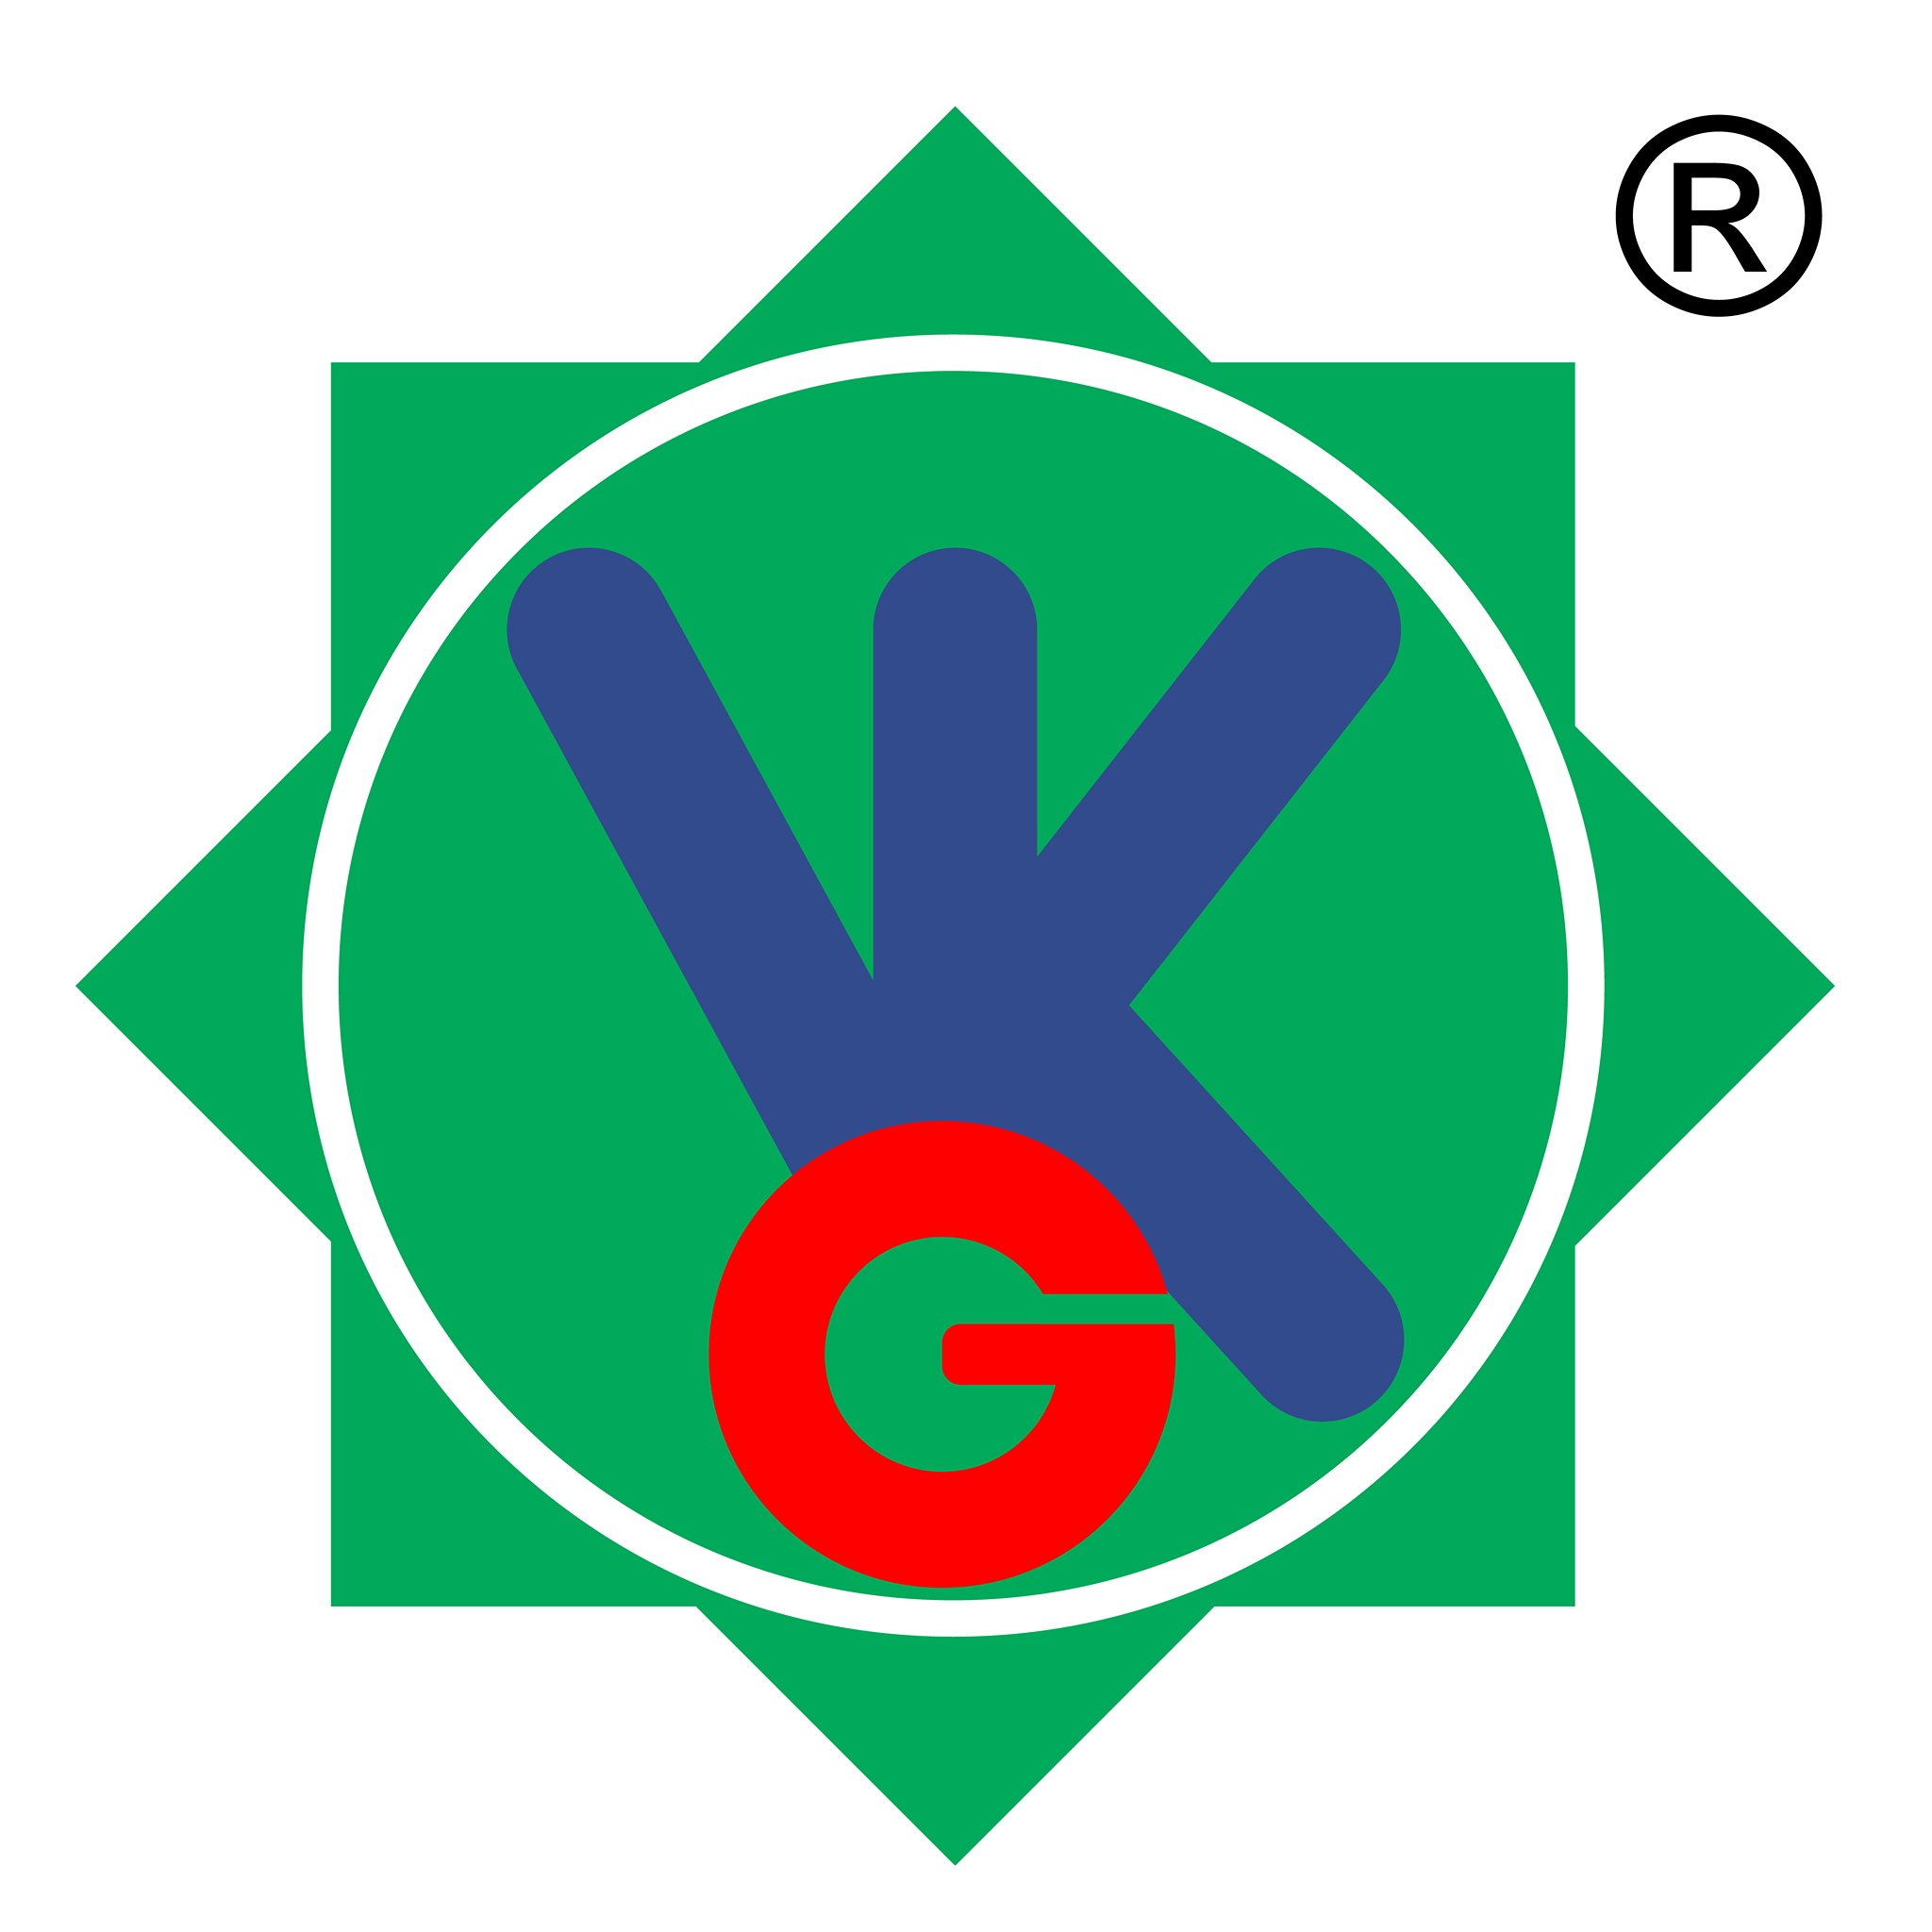 Logo Công ty Cổ phần Đầu tư - Thương mại & Xây dựng Vân Khánh